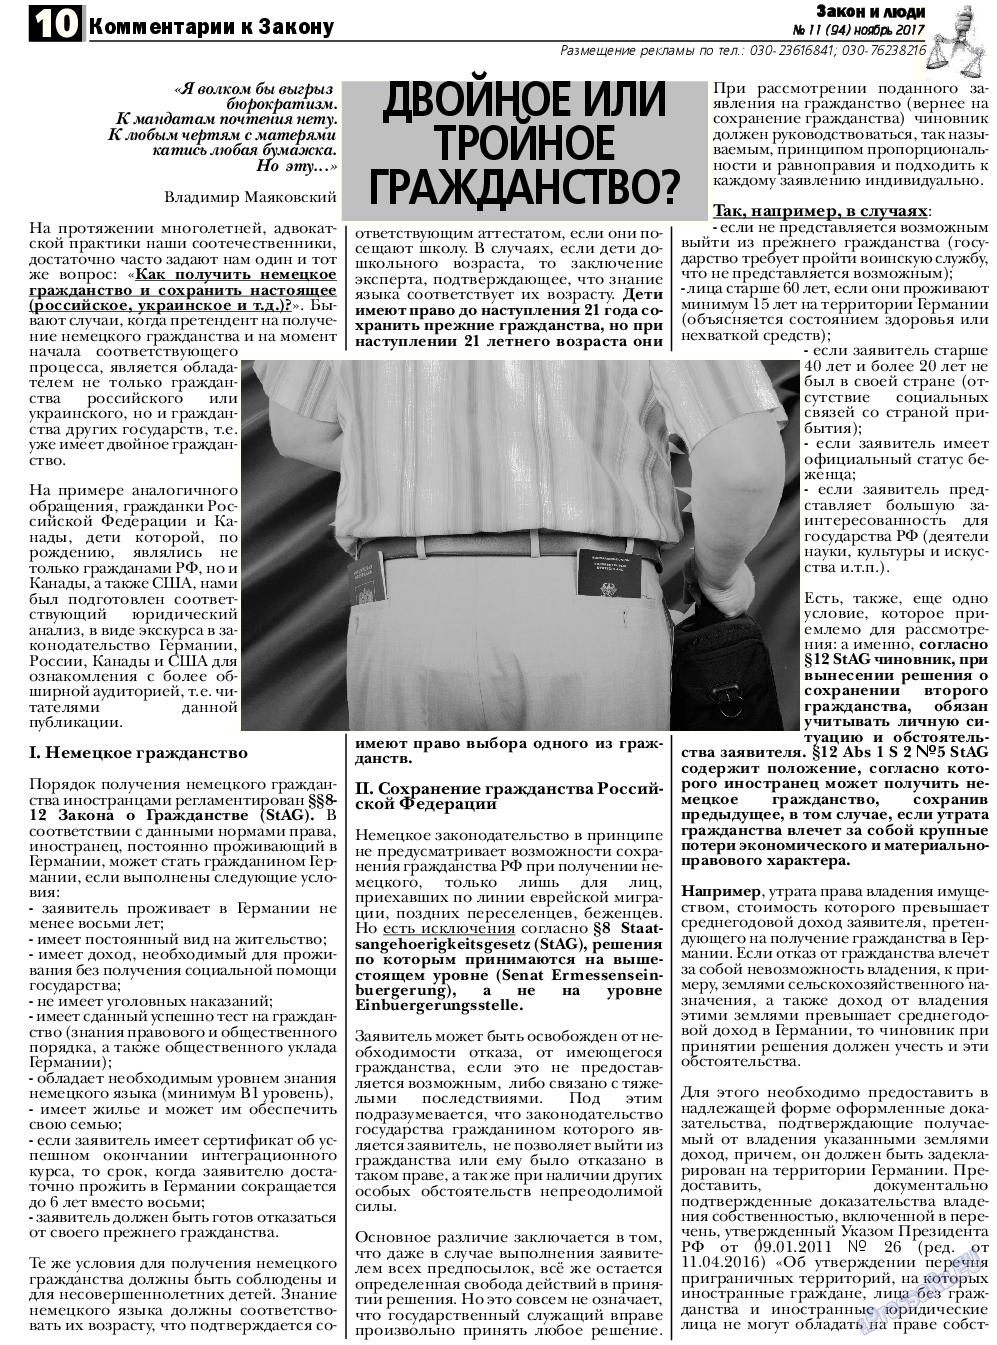 Закон и люди, газета. 2017 №11 стр.10